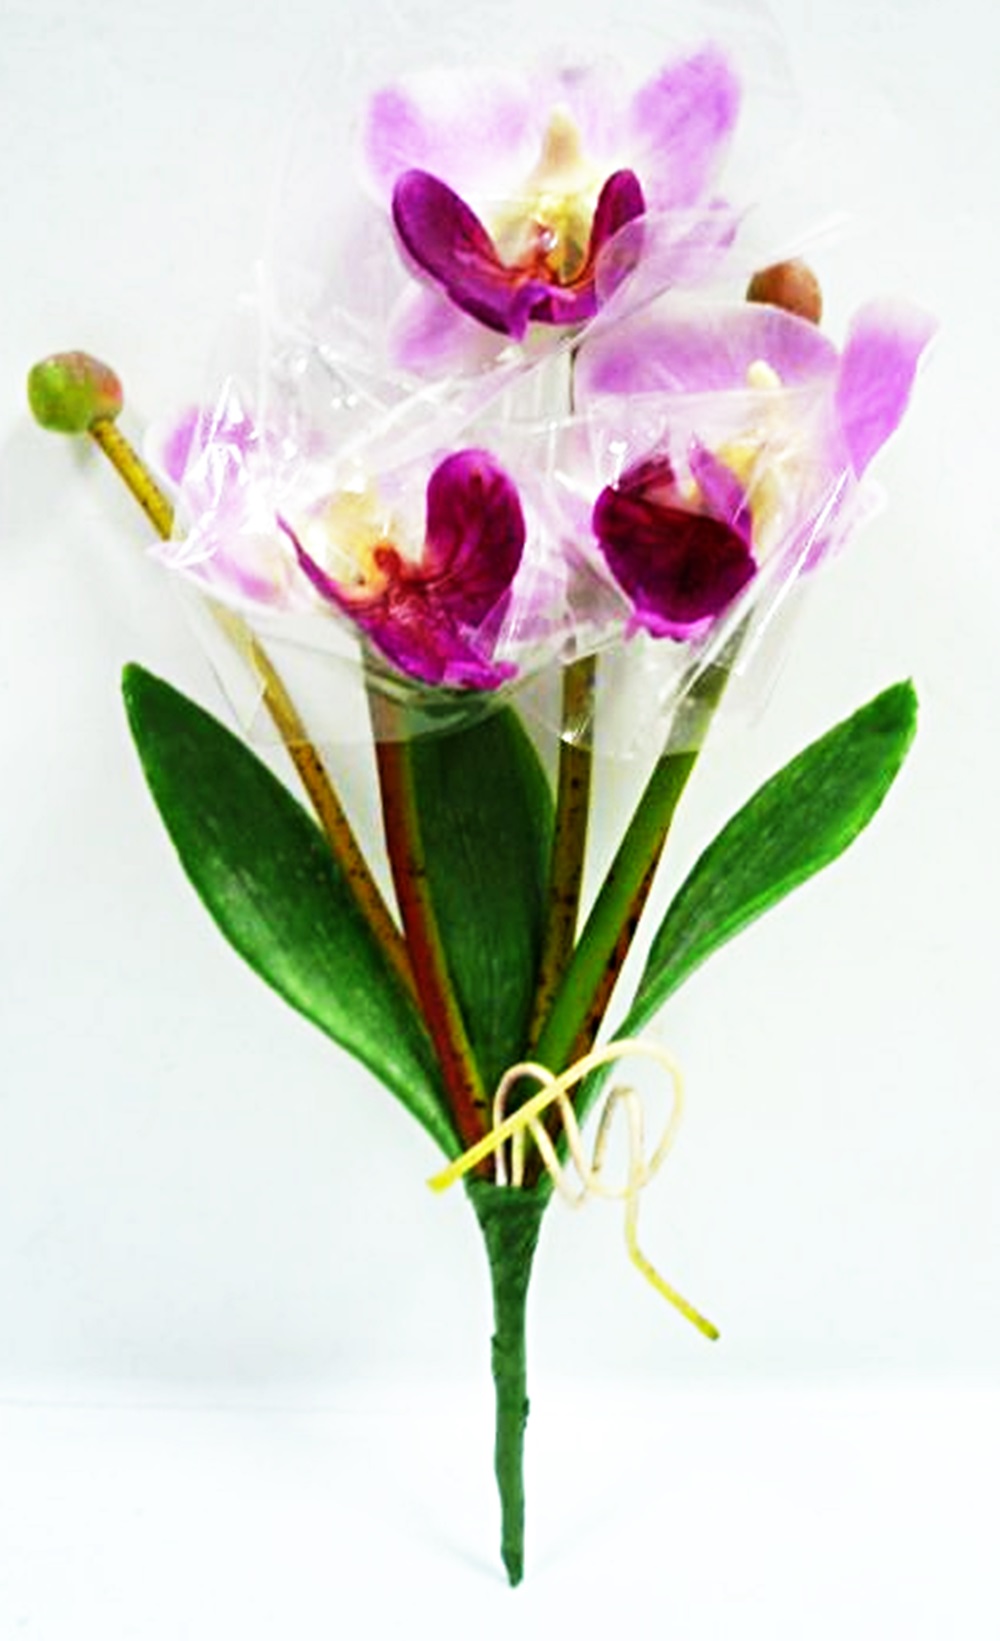 タイ製造花キット ミニデンファレ 薄紫 タイ雑貨のチャイディー